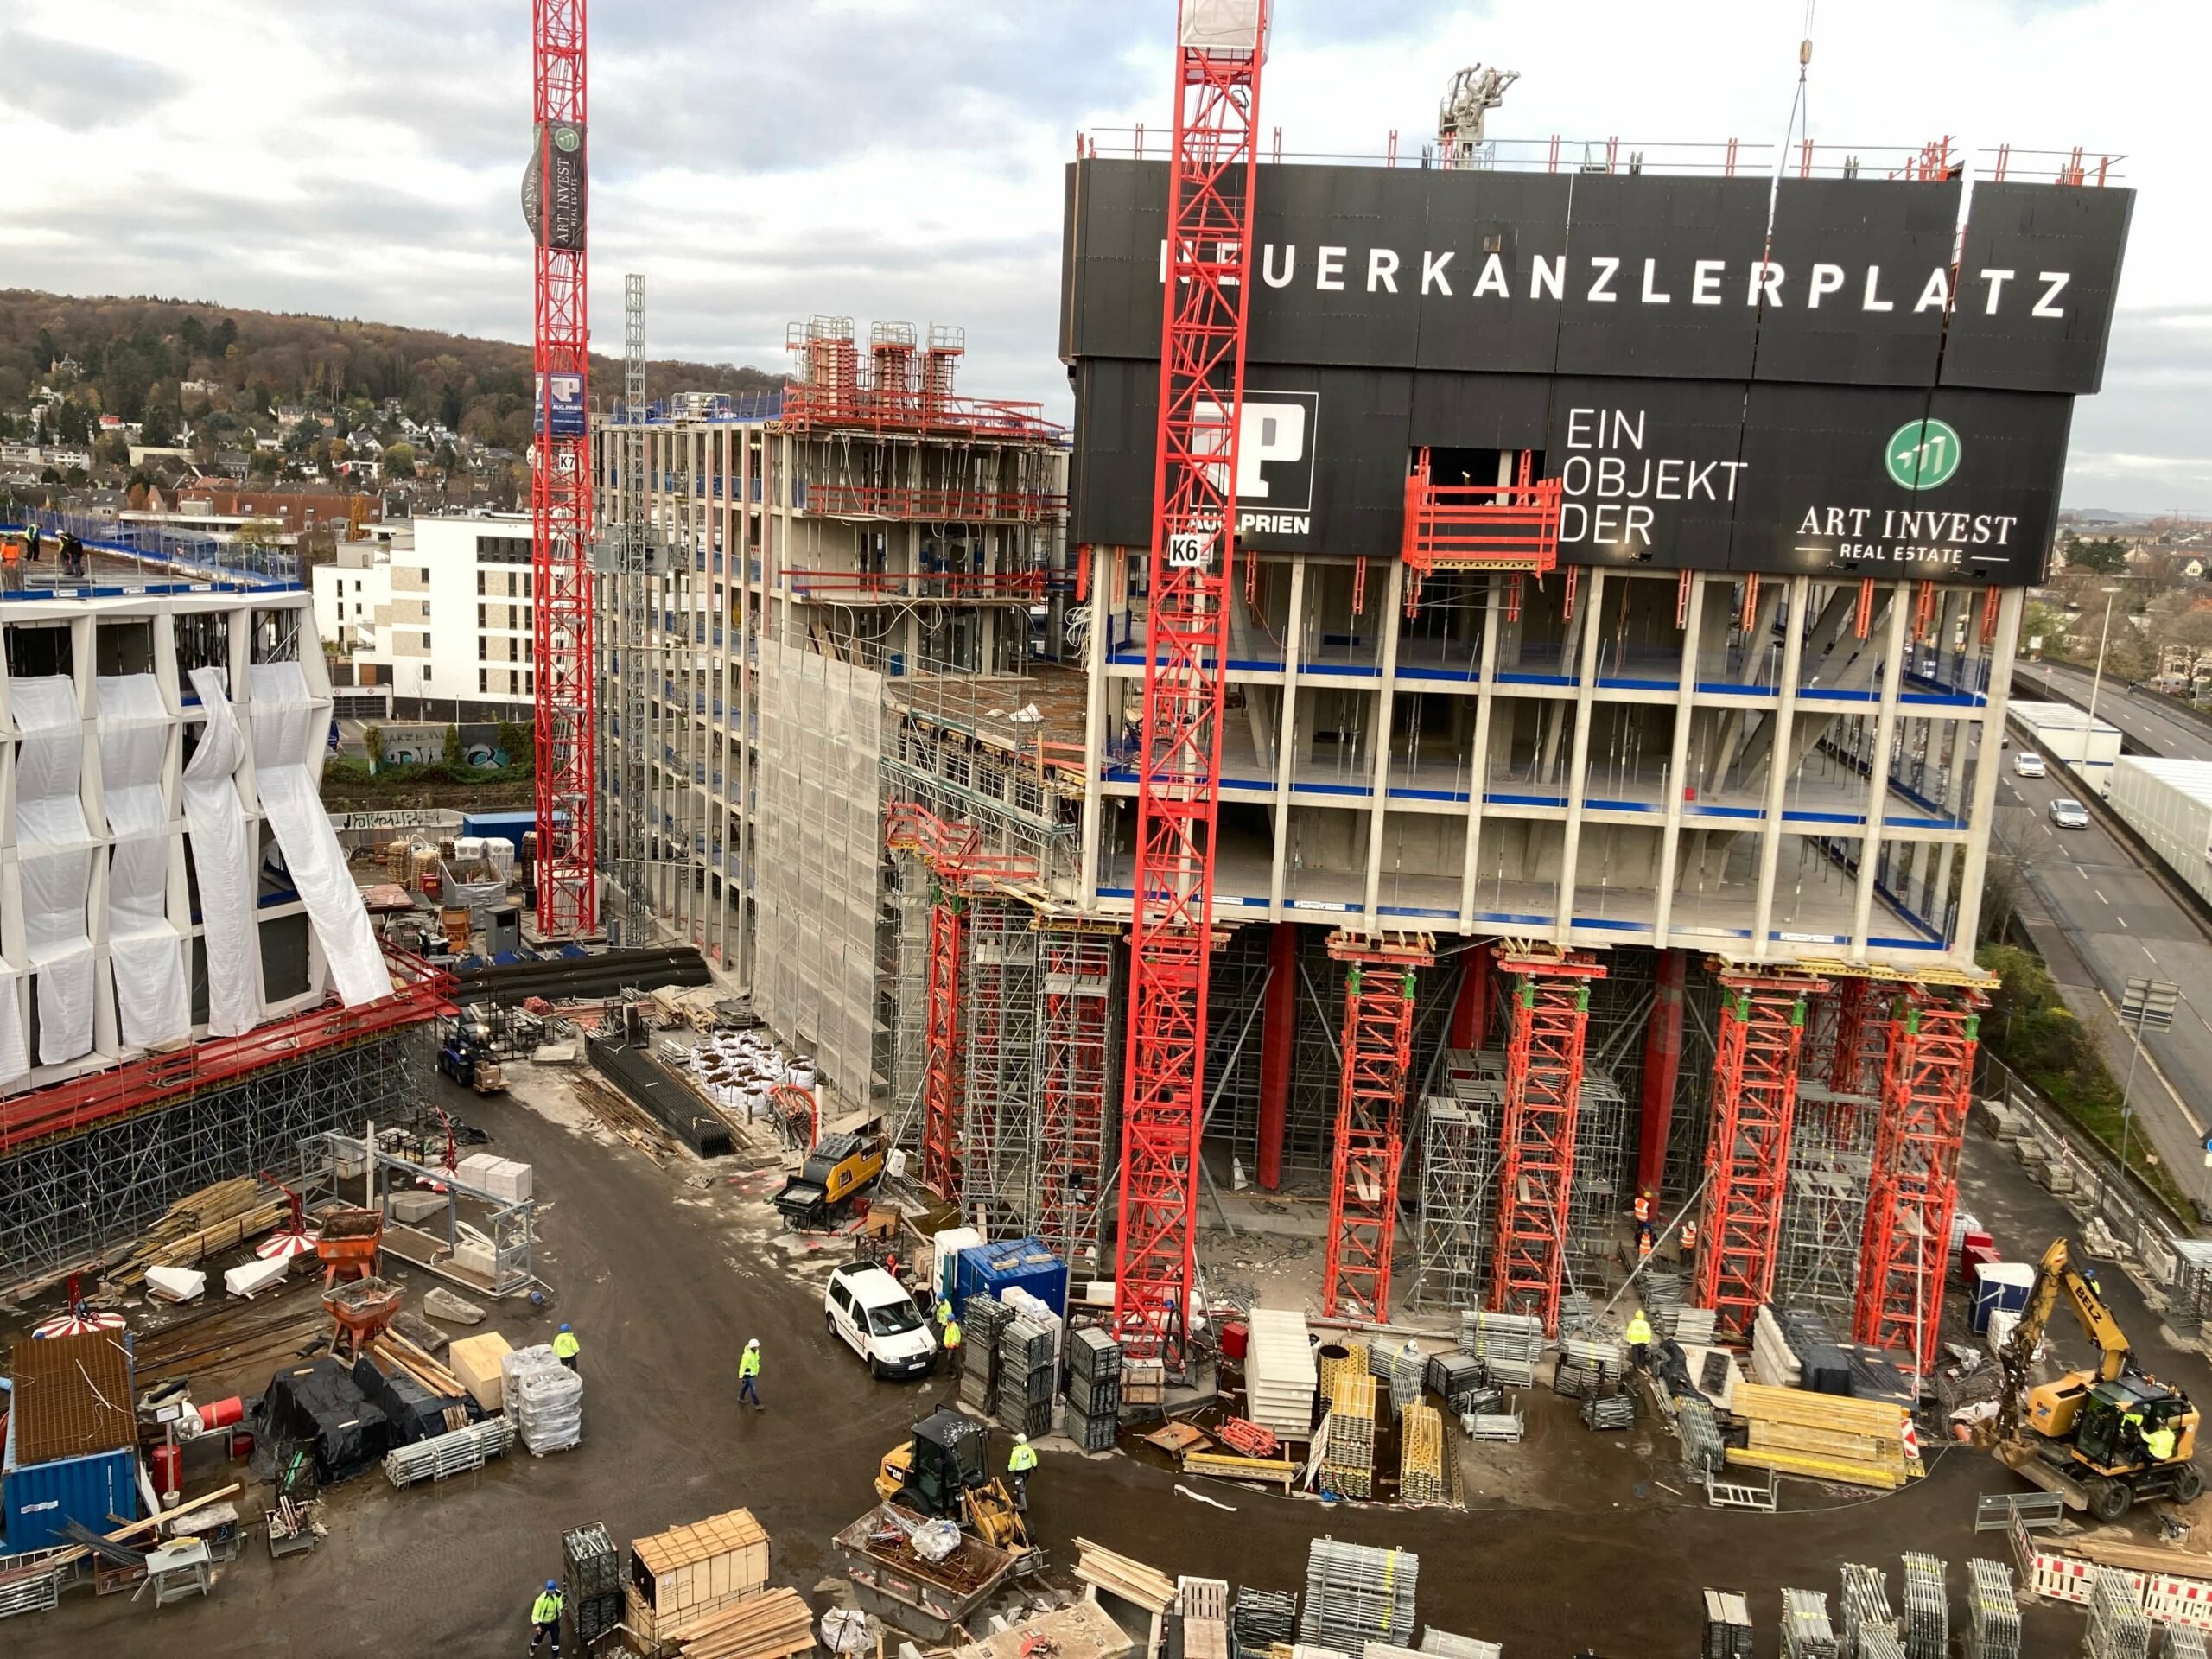 Neuer Kanzlerplatz Bonn 4. Millionenauftrag